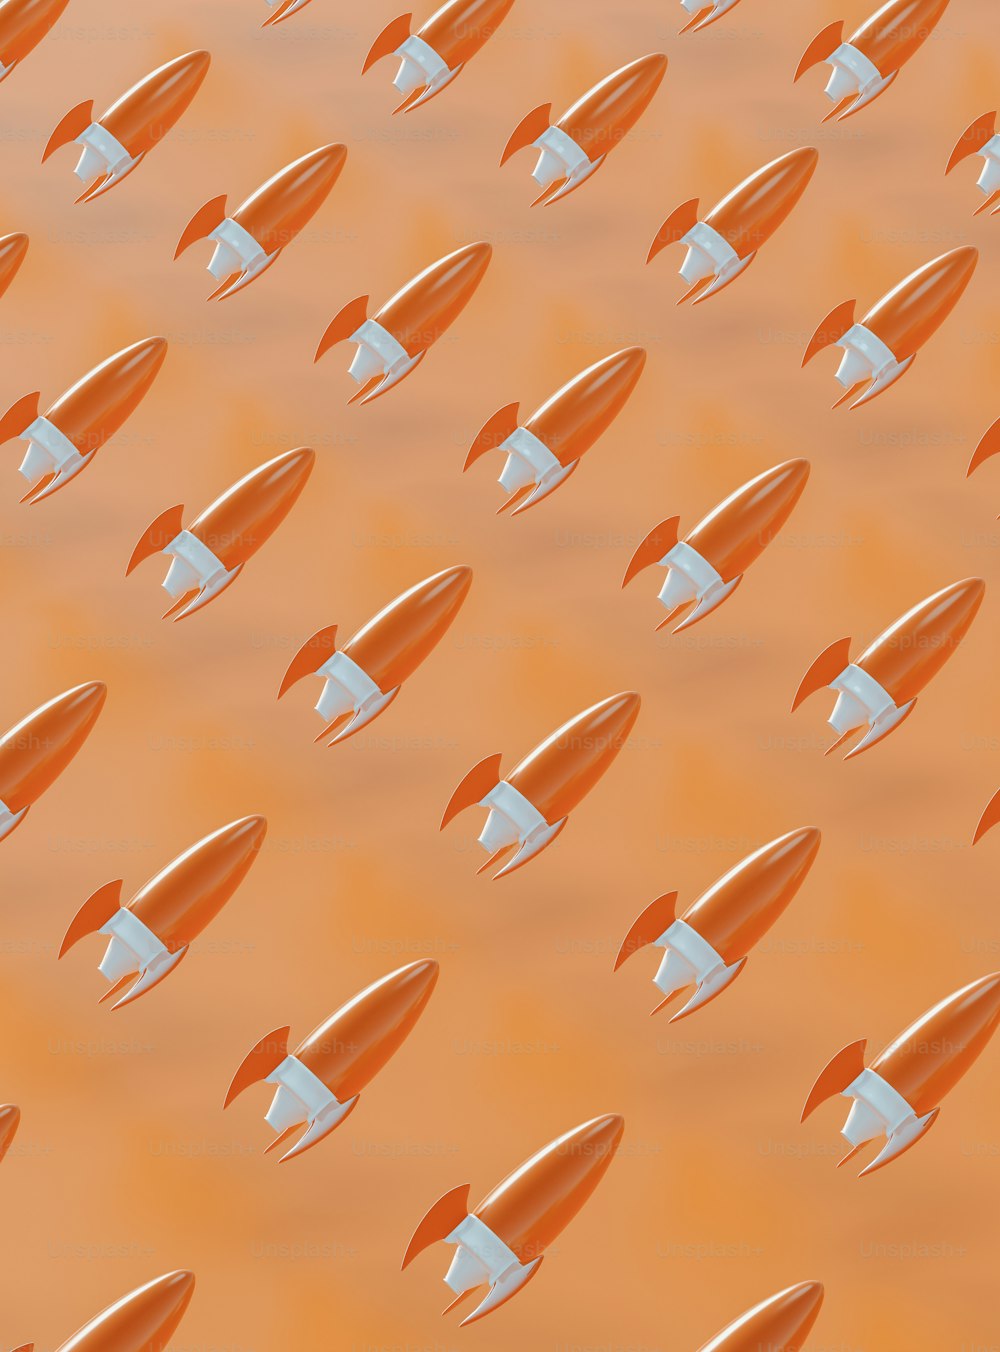 공중을 날아다니는 주황색과 흰색 로켓 그룹